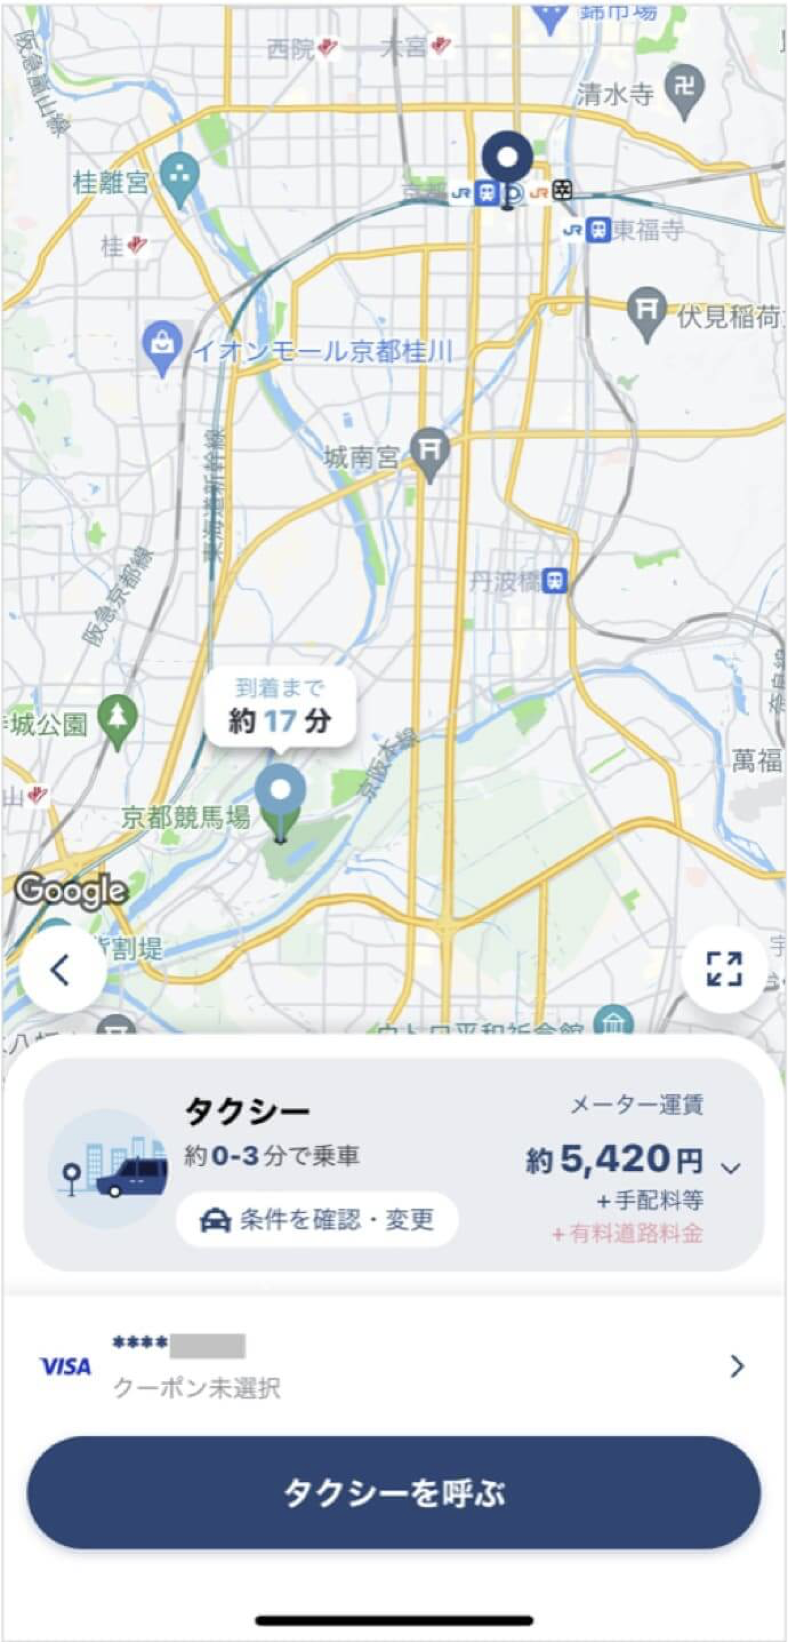 京都駅から京都競馬場までのタクシー料金・所要時間まとめ